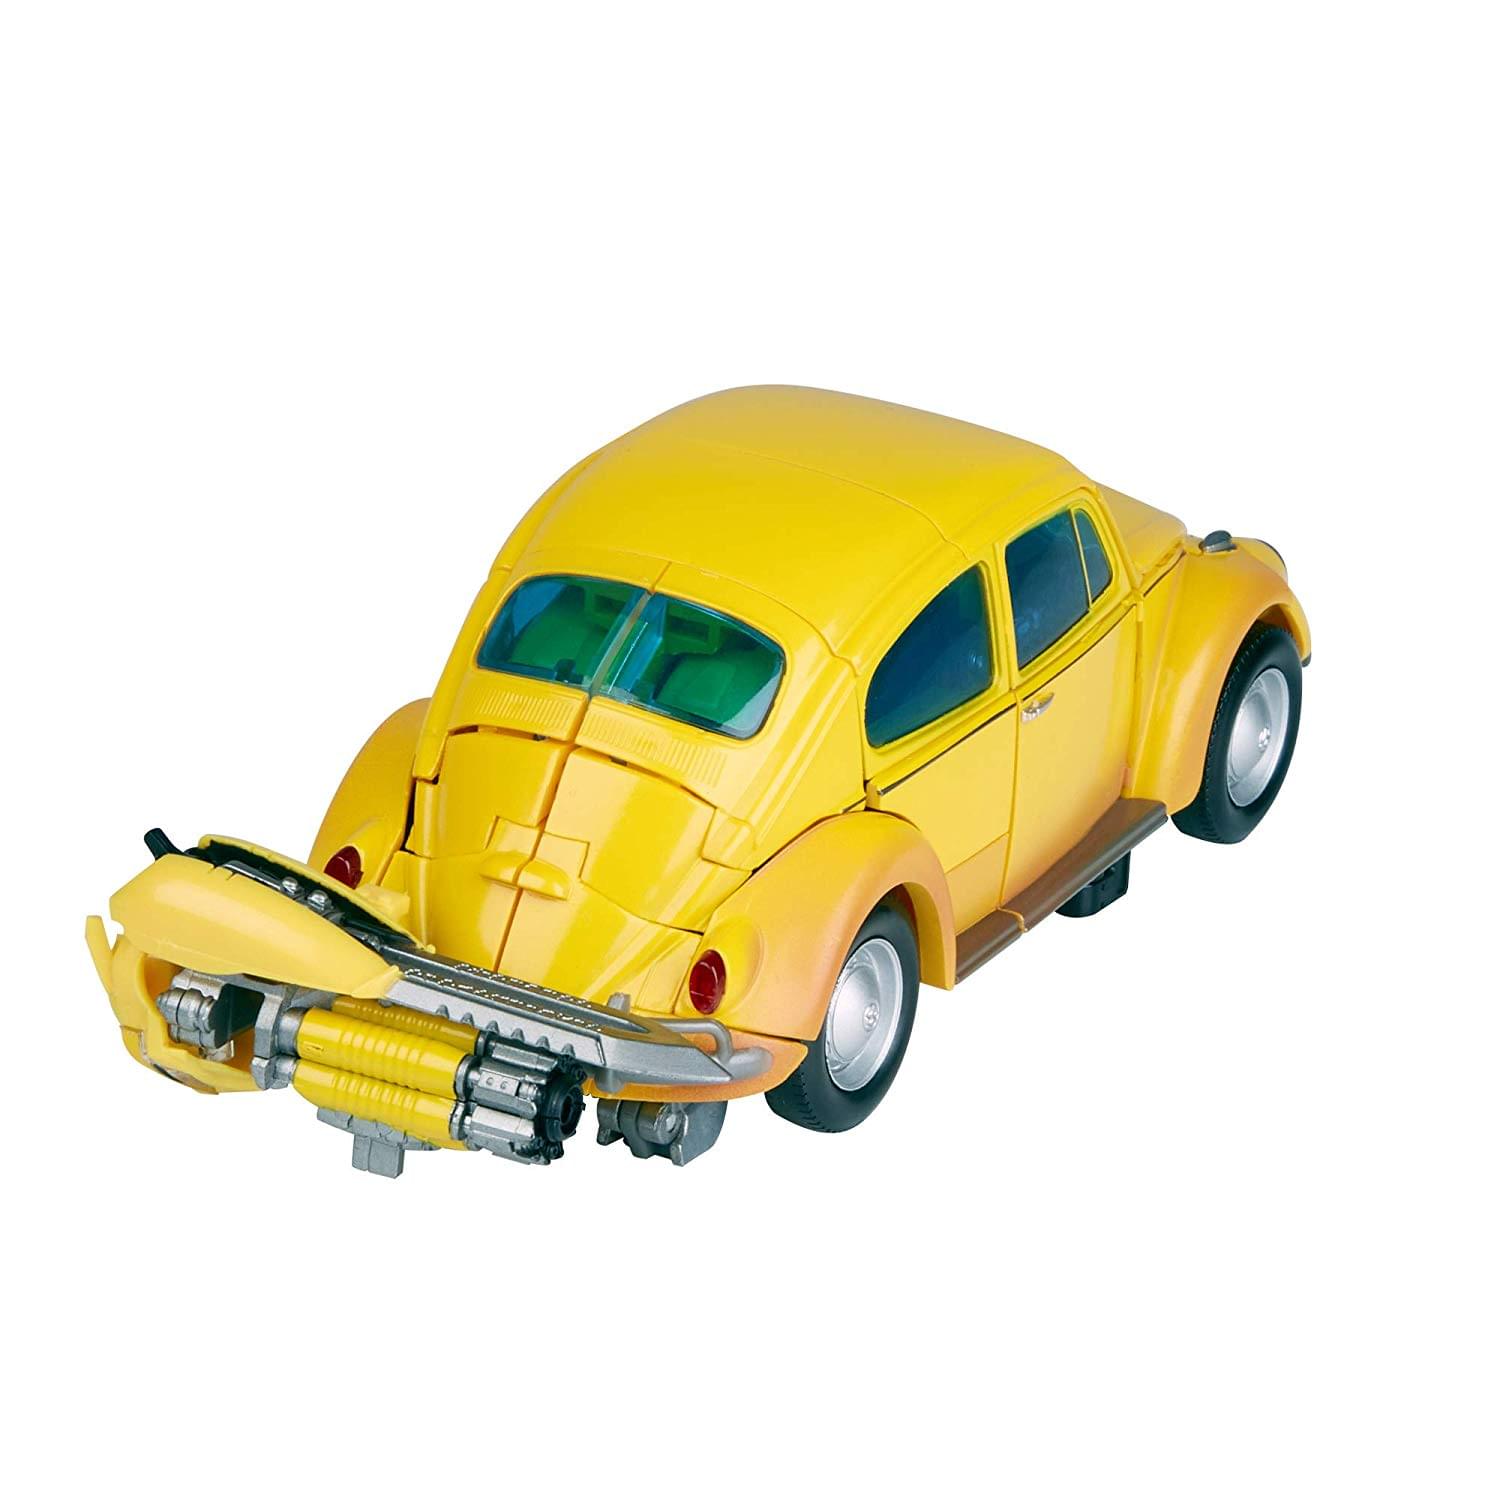 Transformers Masterpiece Movie Series Volkswagen Bumblebee MPM-7 - Exclusive